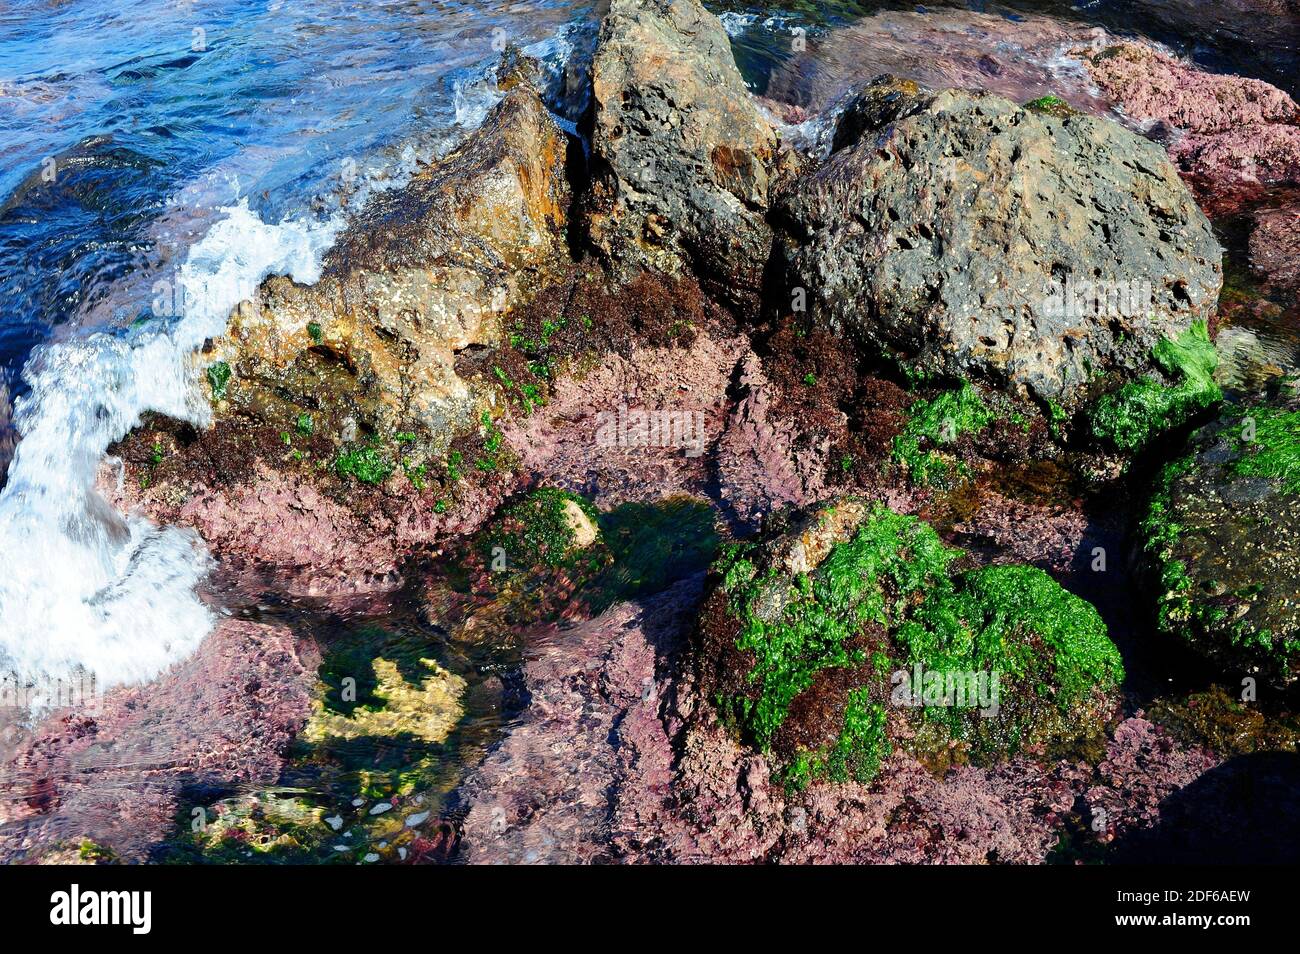 Algas en la costa rocosa: Lechuga de mar (Ulva lactuca), Corallina elongata y Rissoella verruculosa. Costa Brava, Girona, Cataluña, España. Foto de stock